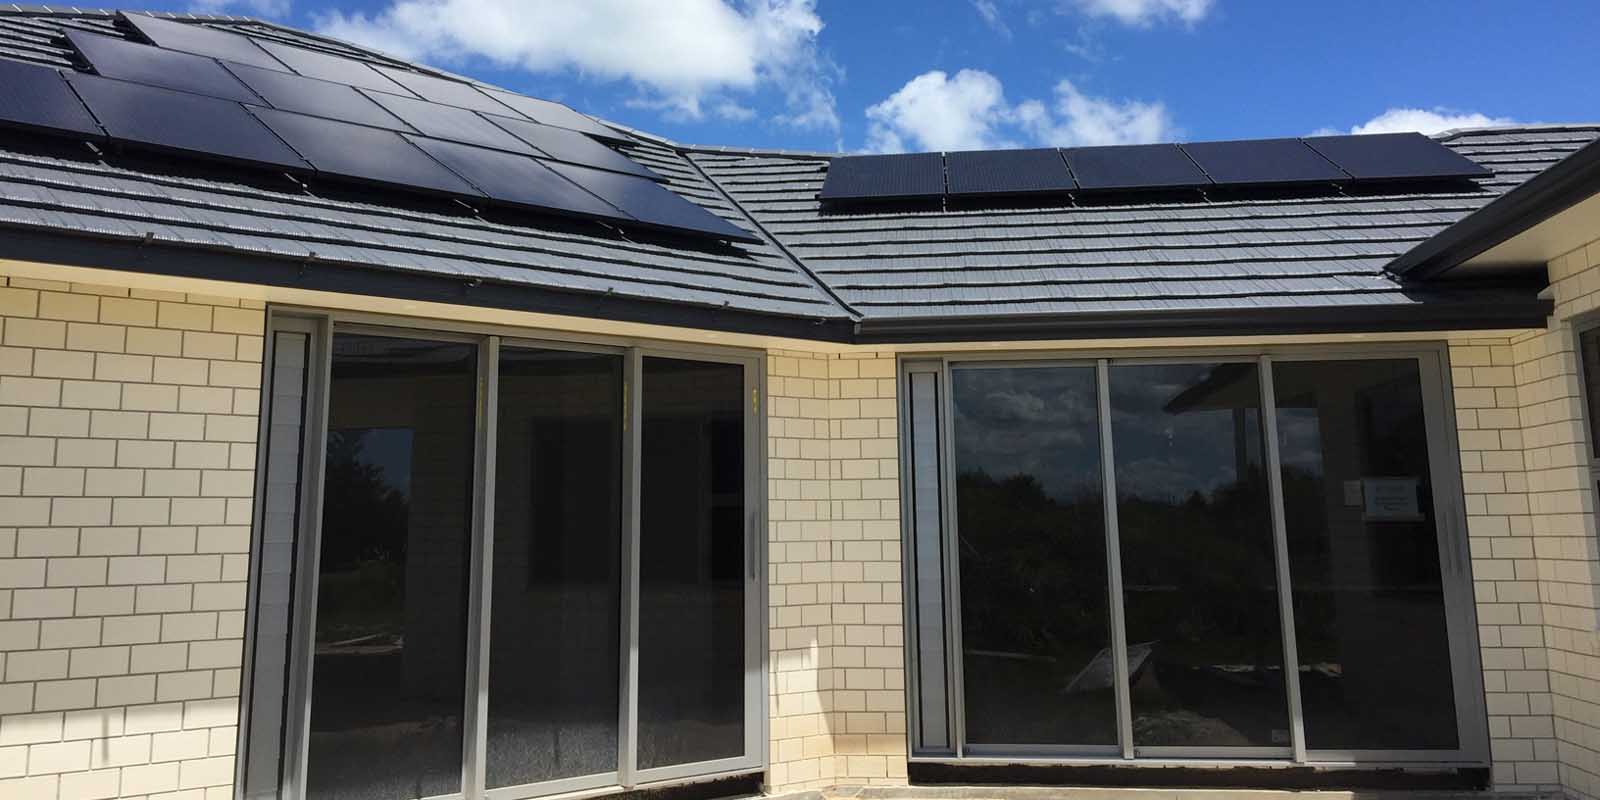 PV Solar Installations